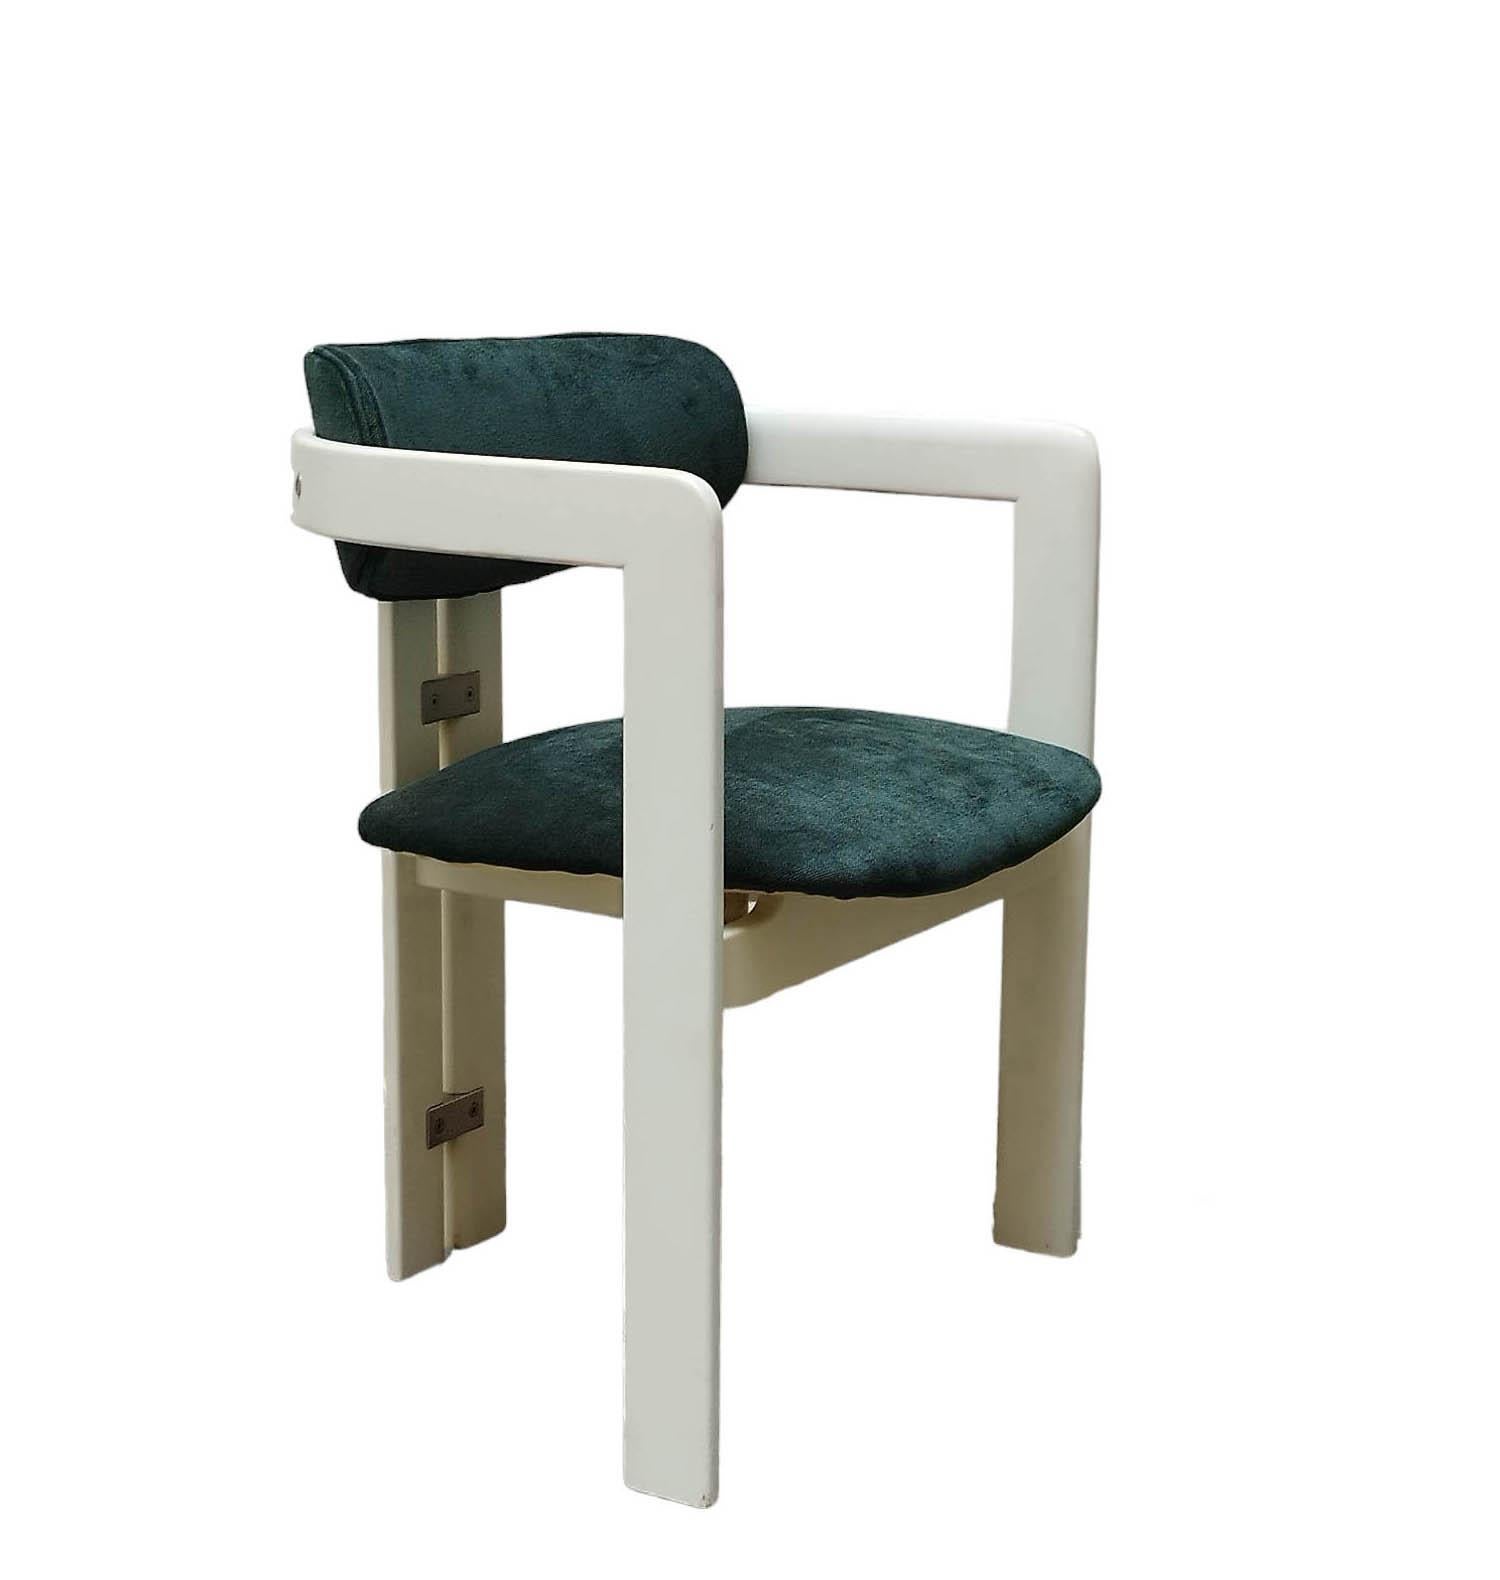 La chaise Pampelona, conçue par Augusto Savini dans les années 1960, est un modèle prisé pour sa structure en bois massif qui forme deux arcs sur les pieds arrière et s'articule avec des pièces en acier.
Il est tapissé de tissu vert pour l'assise et